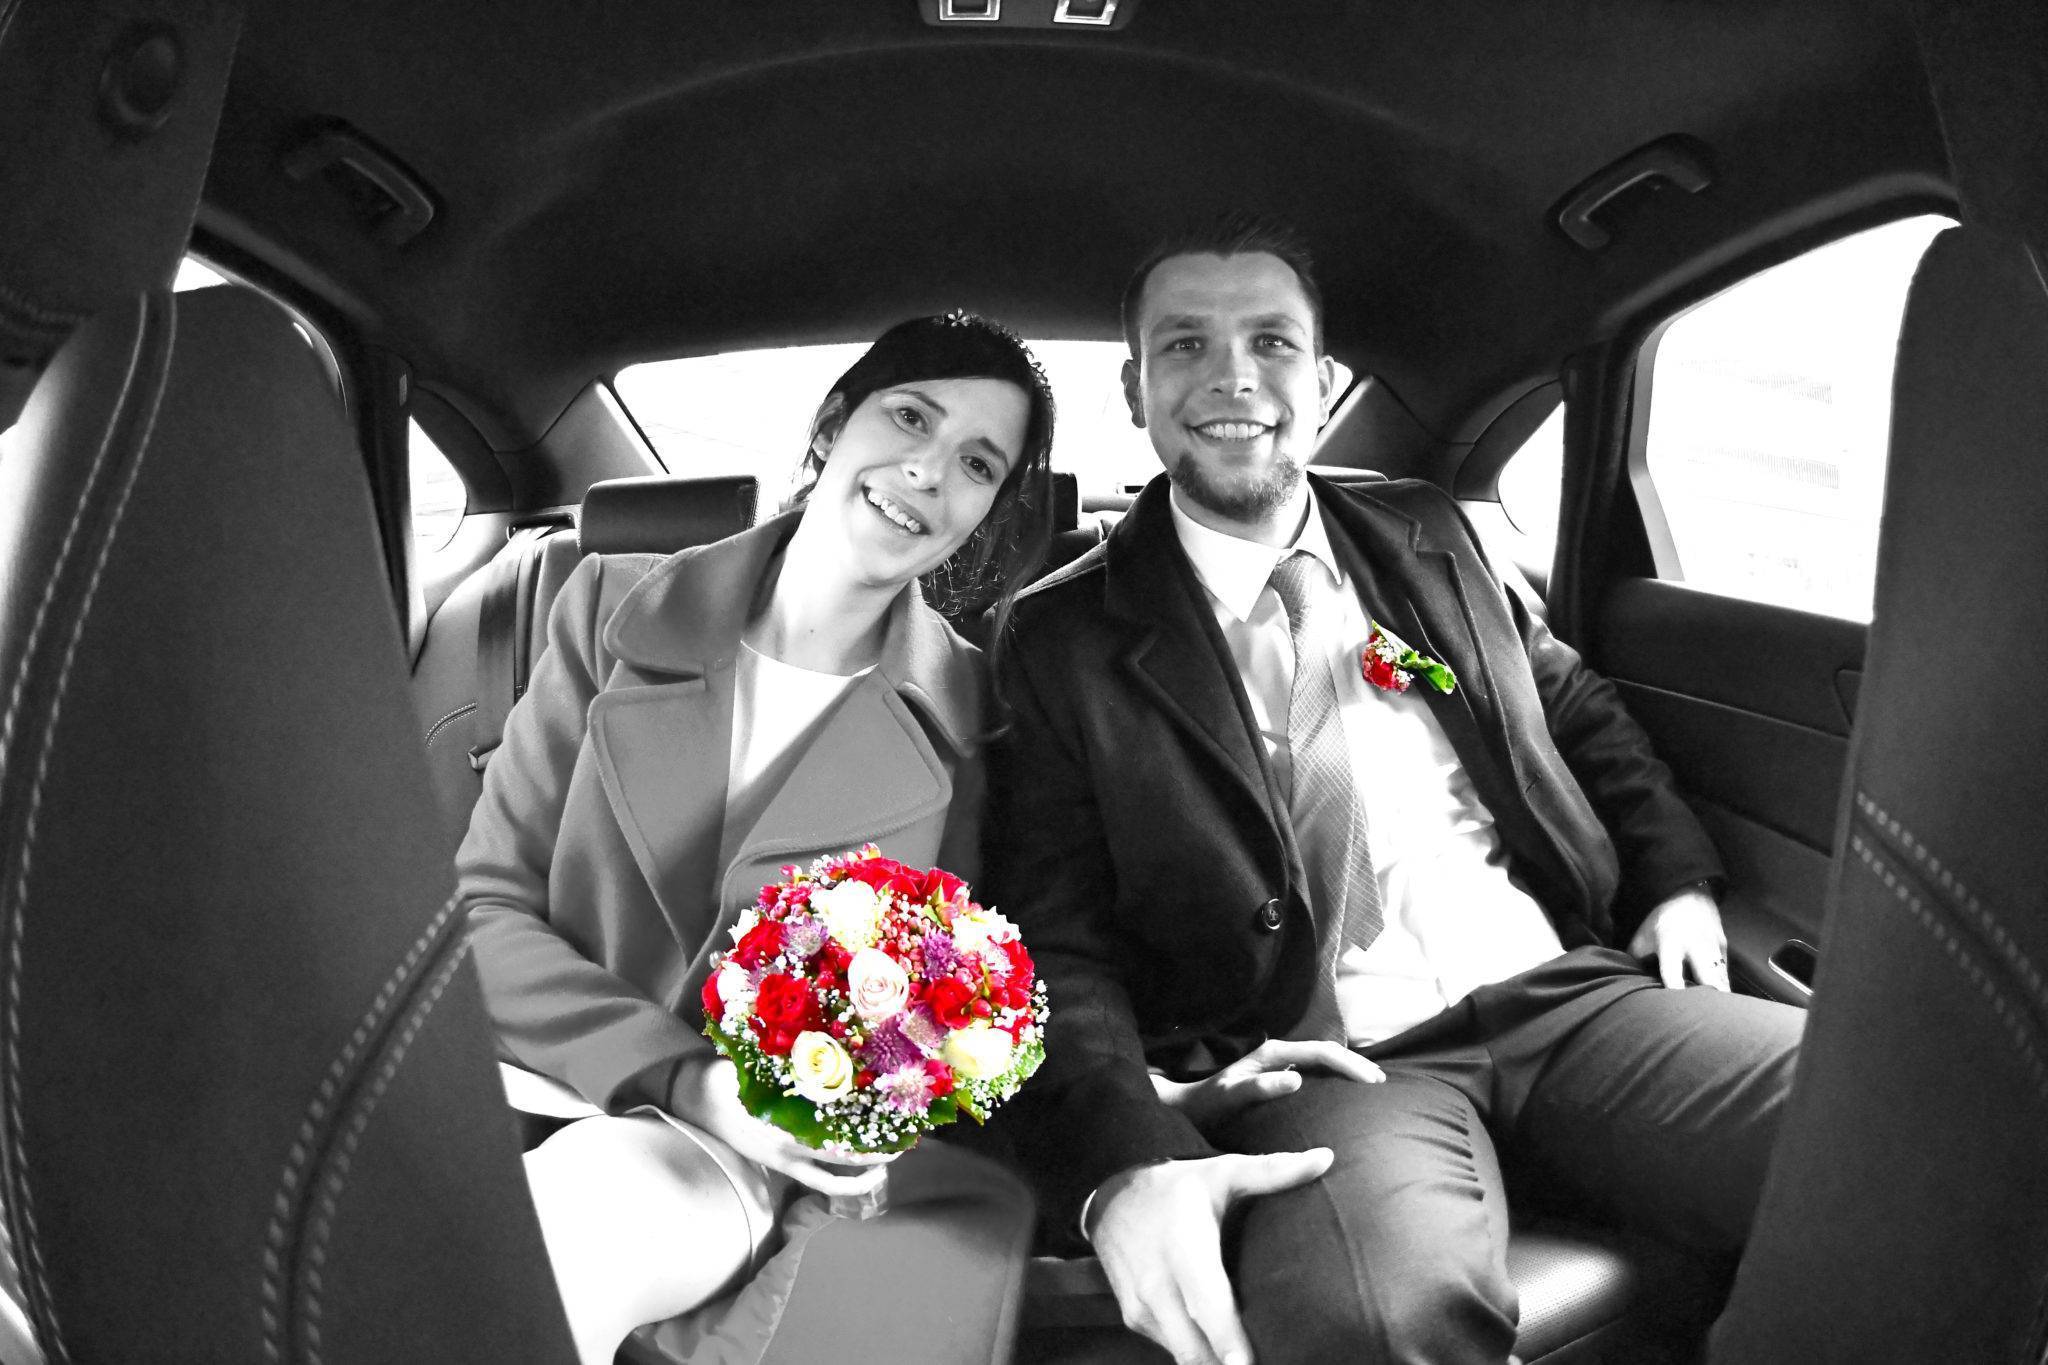 Brautpaarshooting im Auto - schwarzweiss mit buntem Brautstrauss